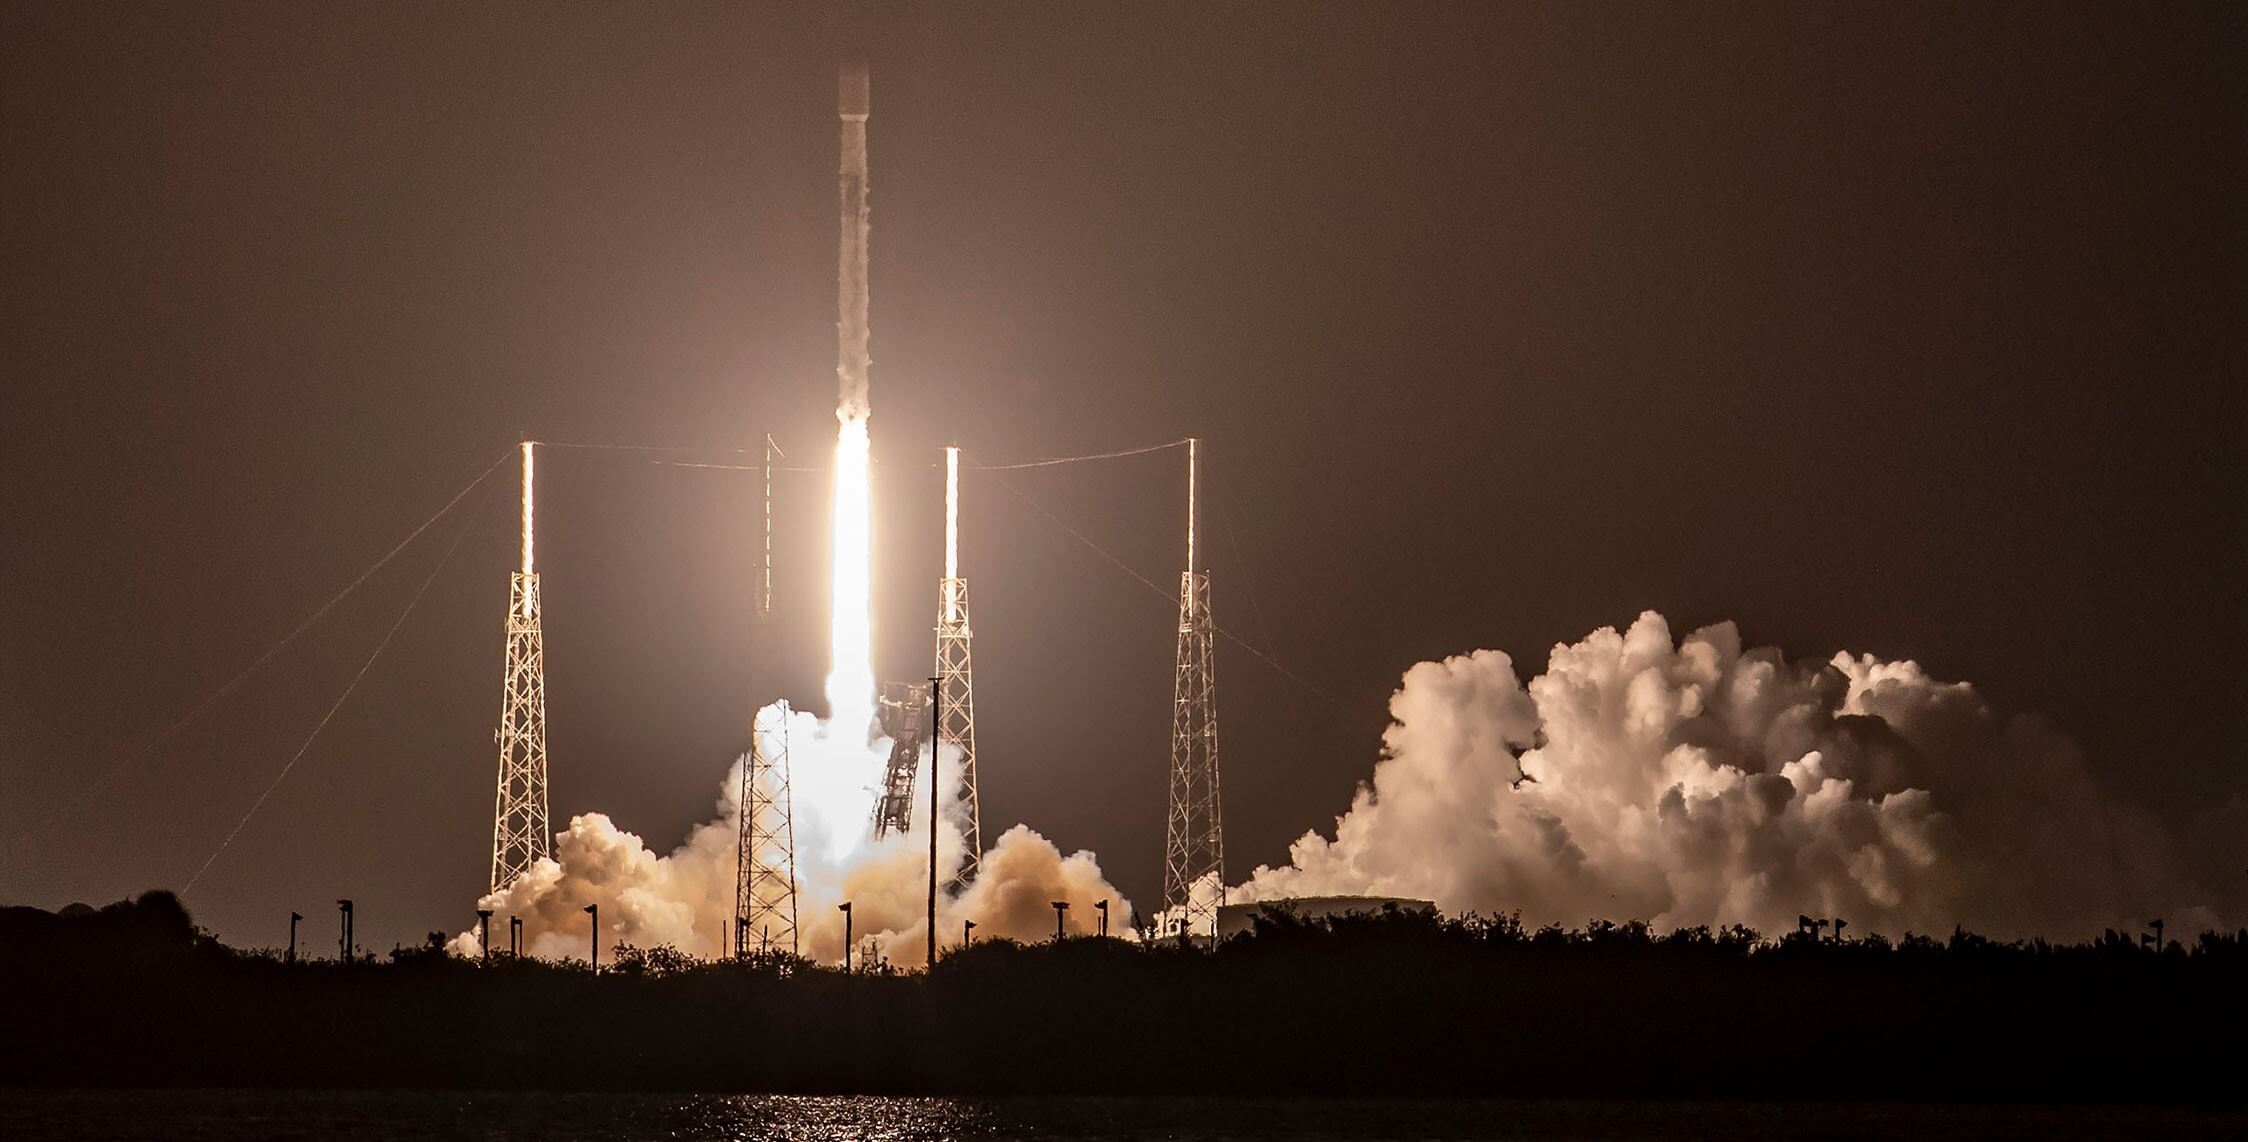 स्पेसएक्स फाल्कन 9 रॉकेट ने मरम्मत किए गए बूस्टर के साथ पेलोड मास रिकॉर्ड तोड़ दिया